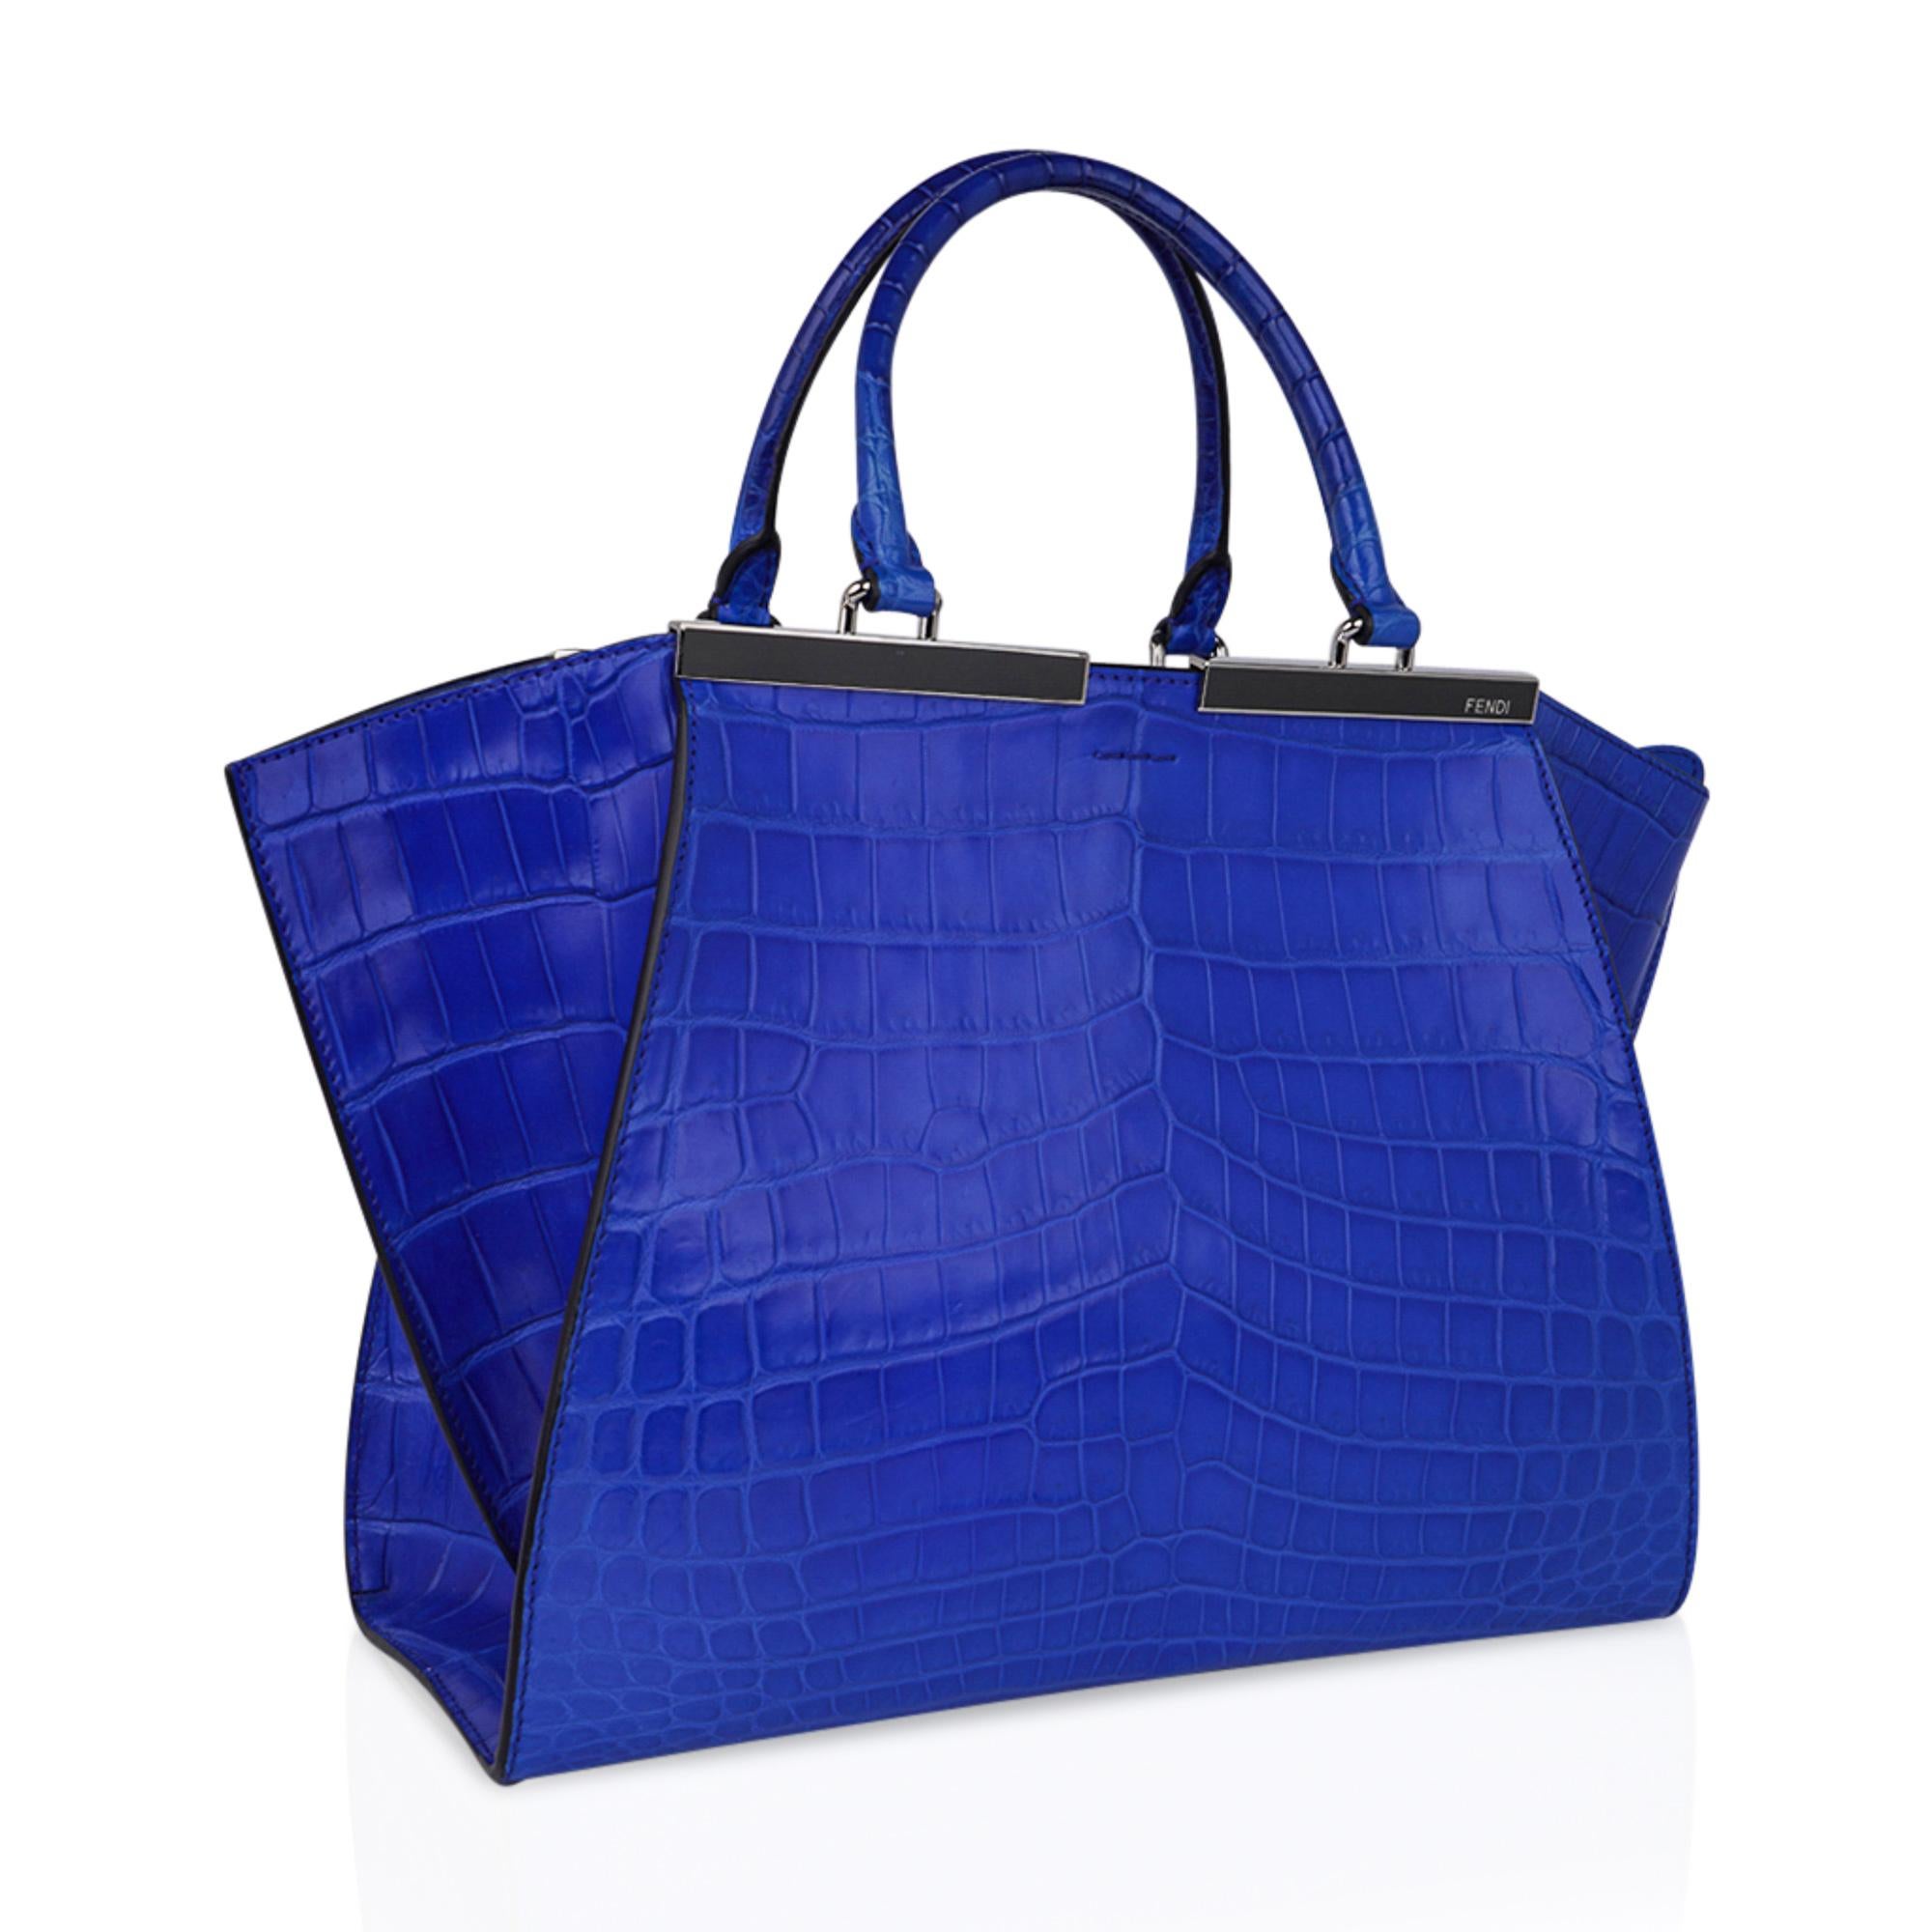 Mightychic bietet eine Fendi 3Jours Medium Blue Matte Crocodile Bag an.
Eine reiche und auffällige Tasche aus mattem Krokodil in Electric Blue mit silberfarbener Hardware.
Doppelter Griff mit Reißverschluss oben.
Die Tasche wird mit einer Clochette